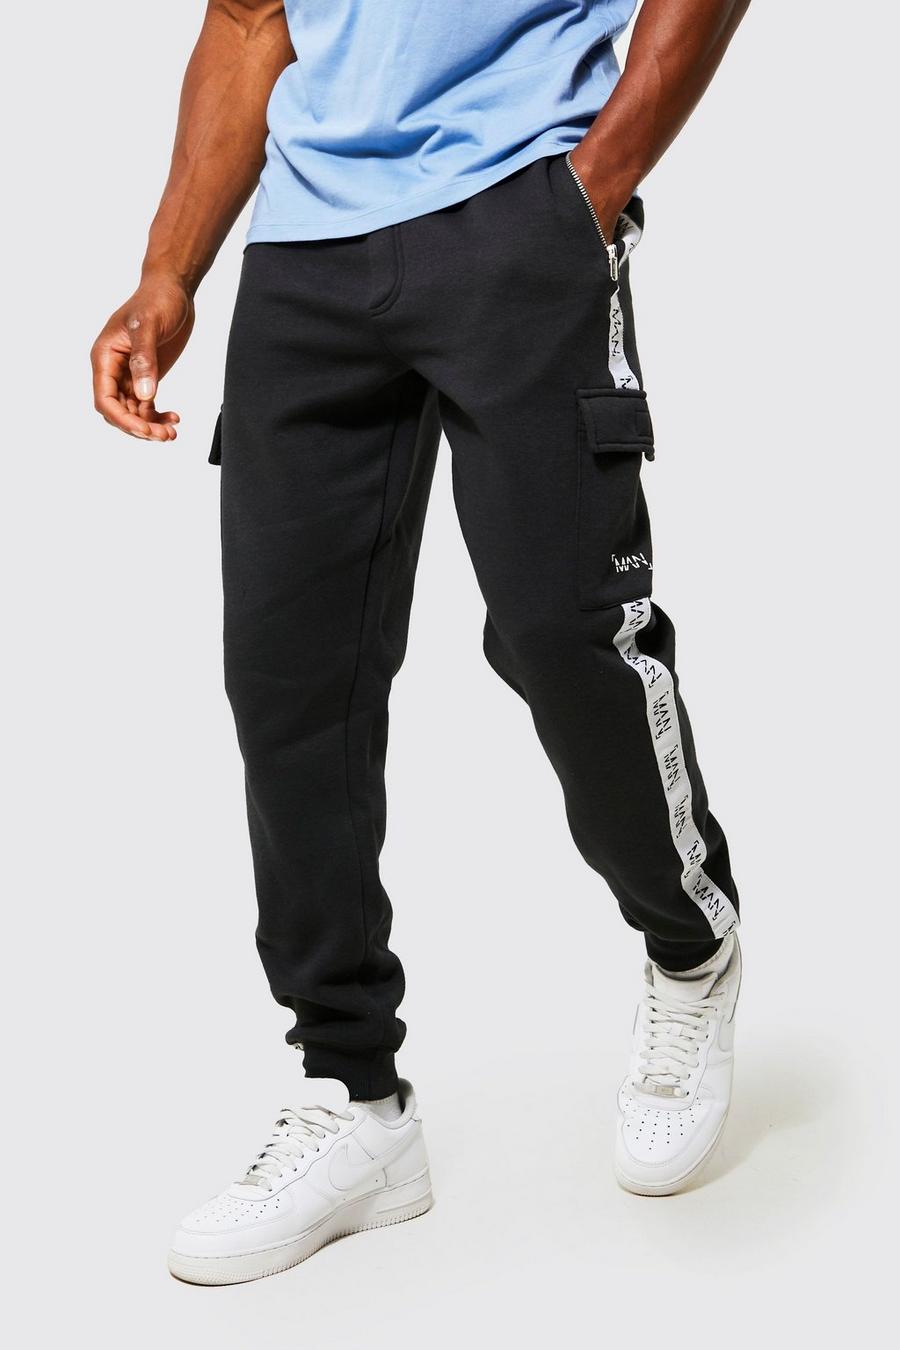 Pantalón deportivo cargo ajustado con cinta, Black nero image number 1